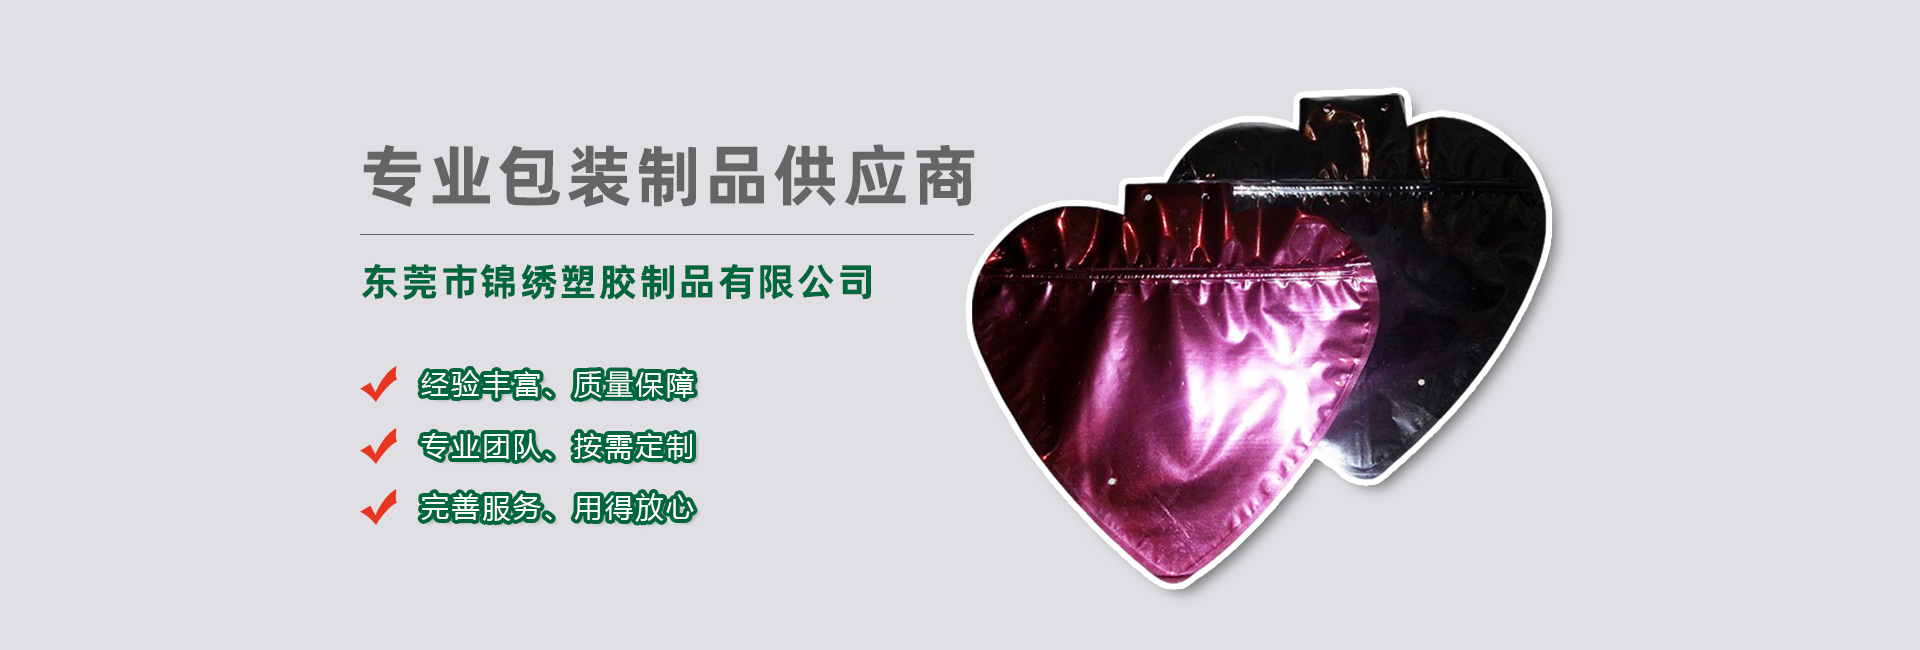 虹口食品袋banner